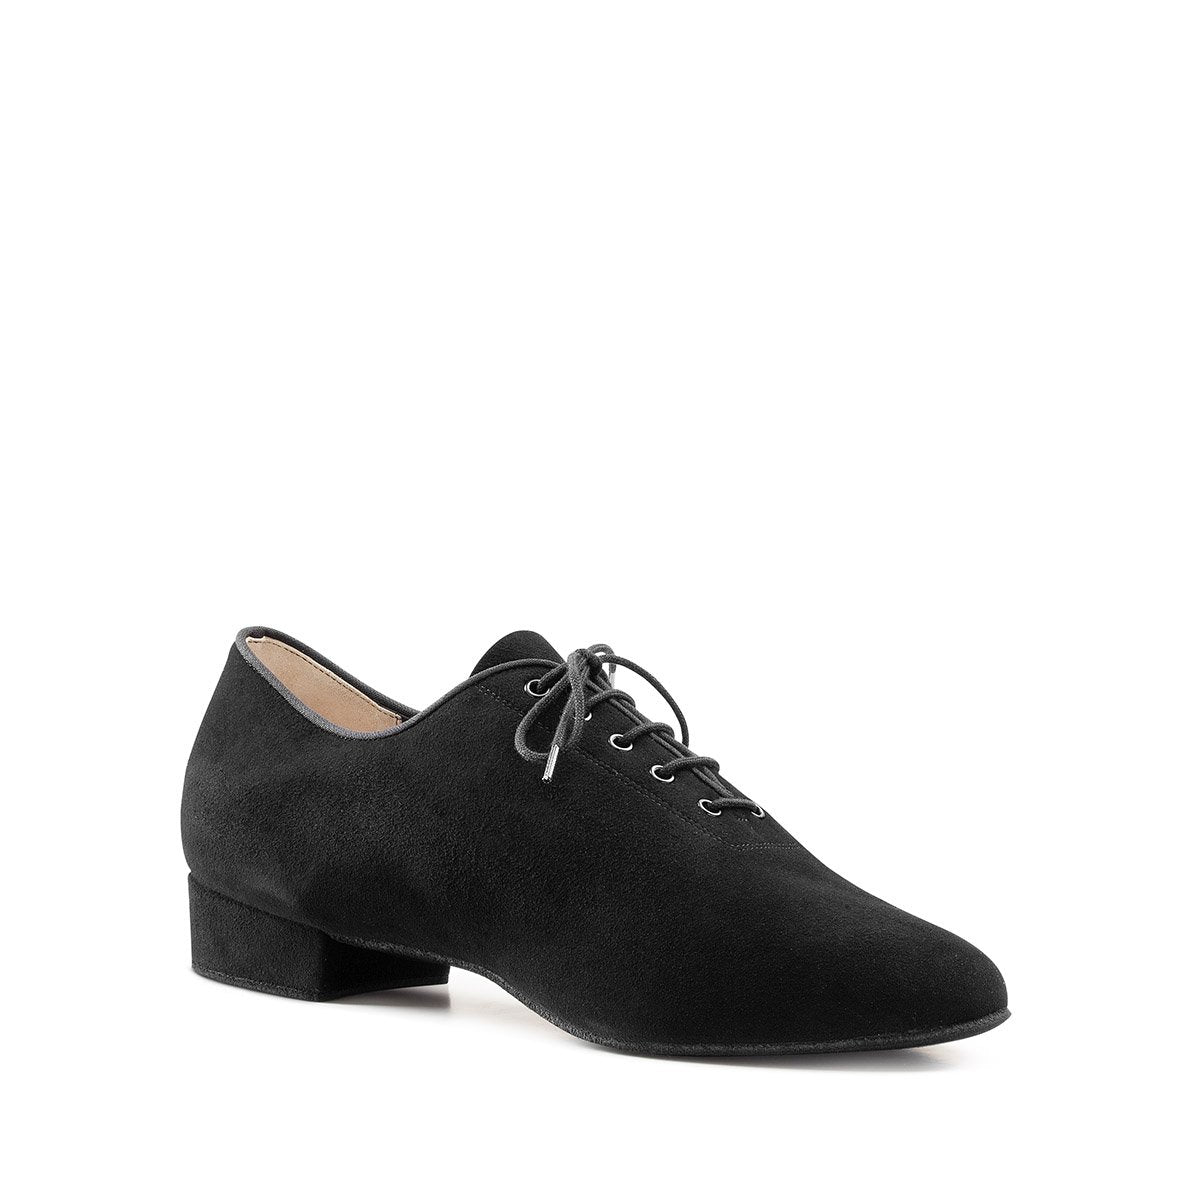 Men's black suede ballroom dance shoe